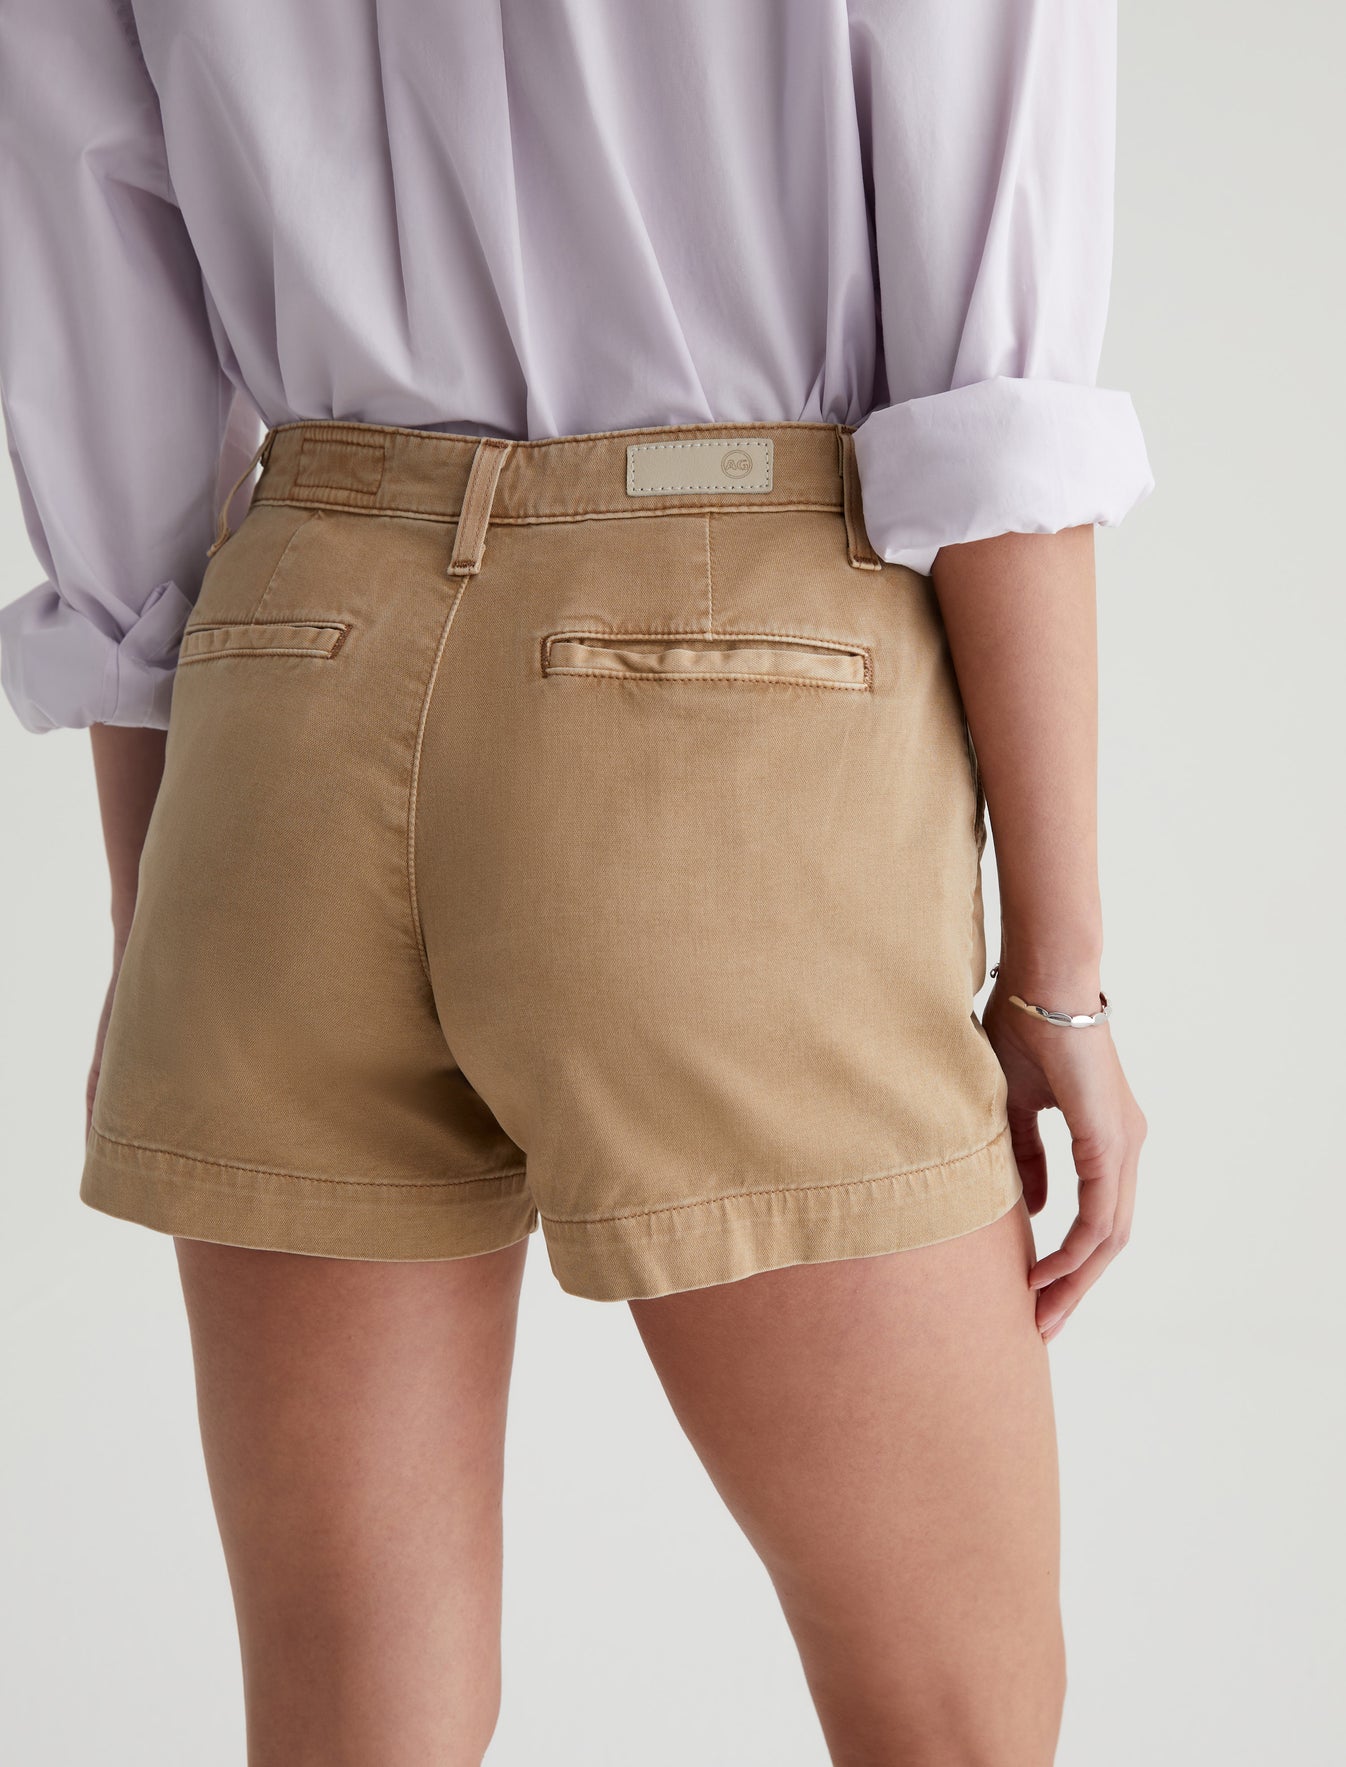 Caden Short Sulfur Stone Khaki Tailored Trouser Short Women Bottom Photo 5